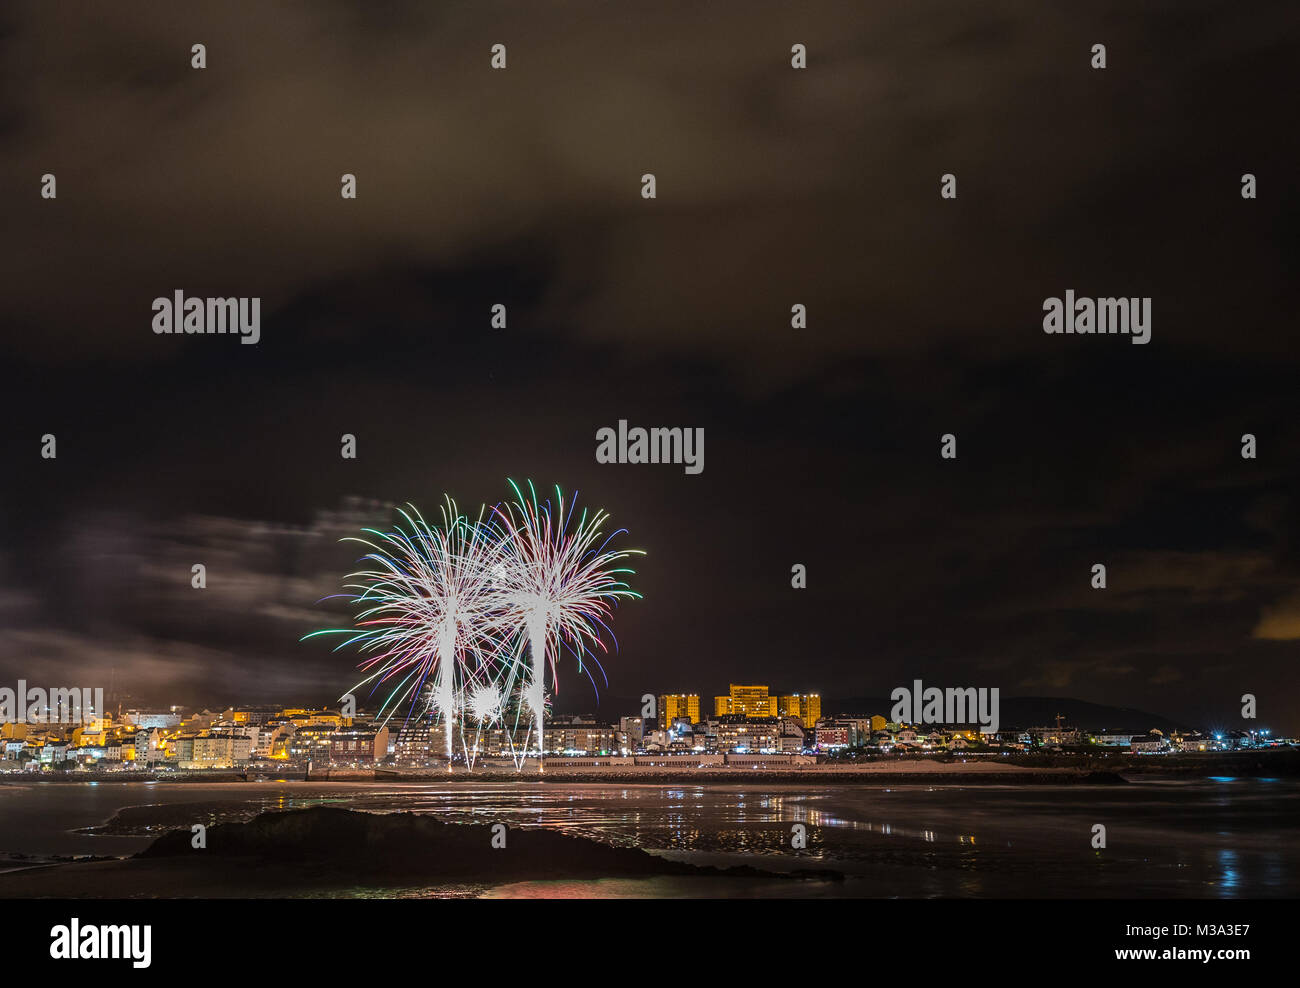 Vacanze in costa della Galizia, dove di notte per celebrare i festeggiamenti nella città di Foz, Spagna, contempliamo i fuochi d'artificio degno di ammirazione Foto Stock